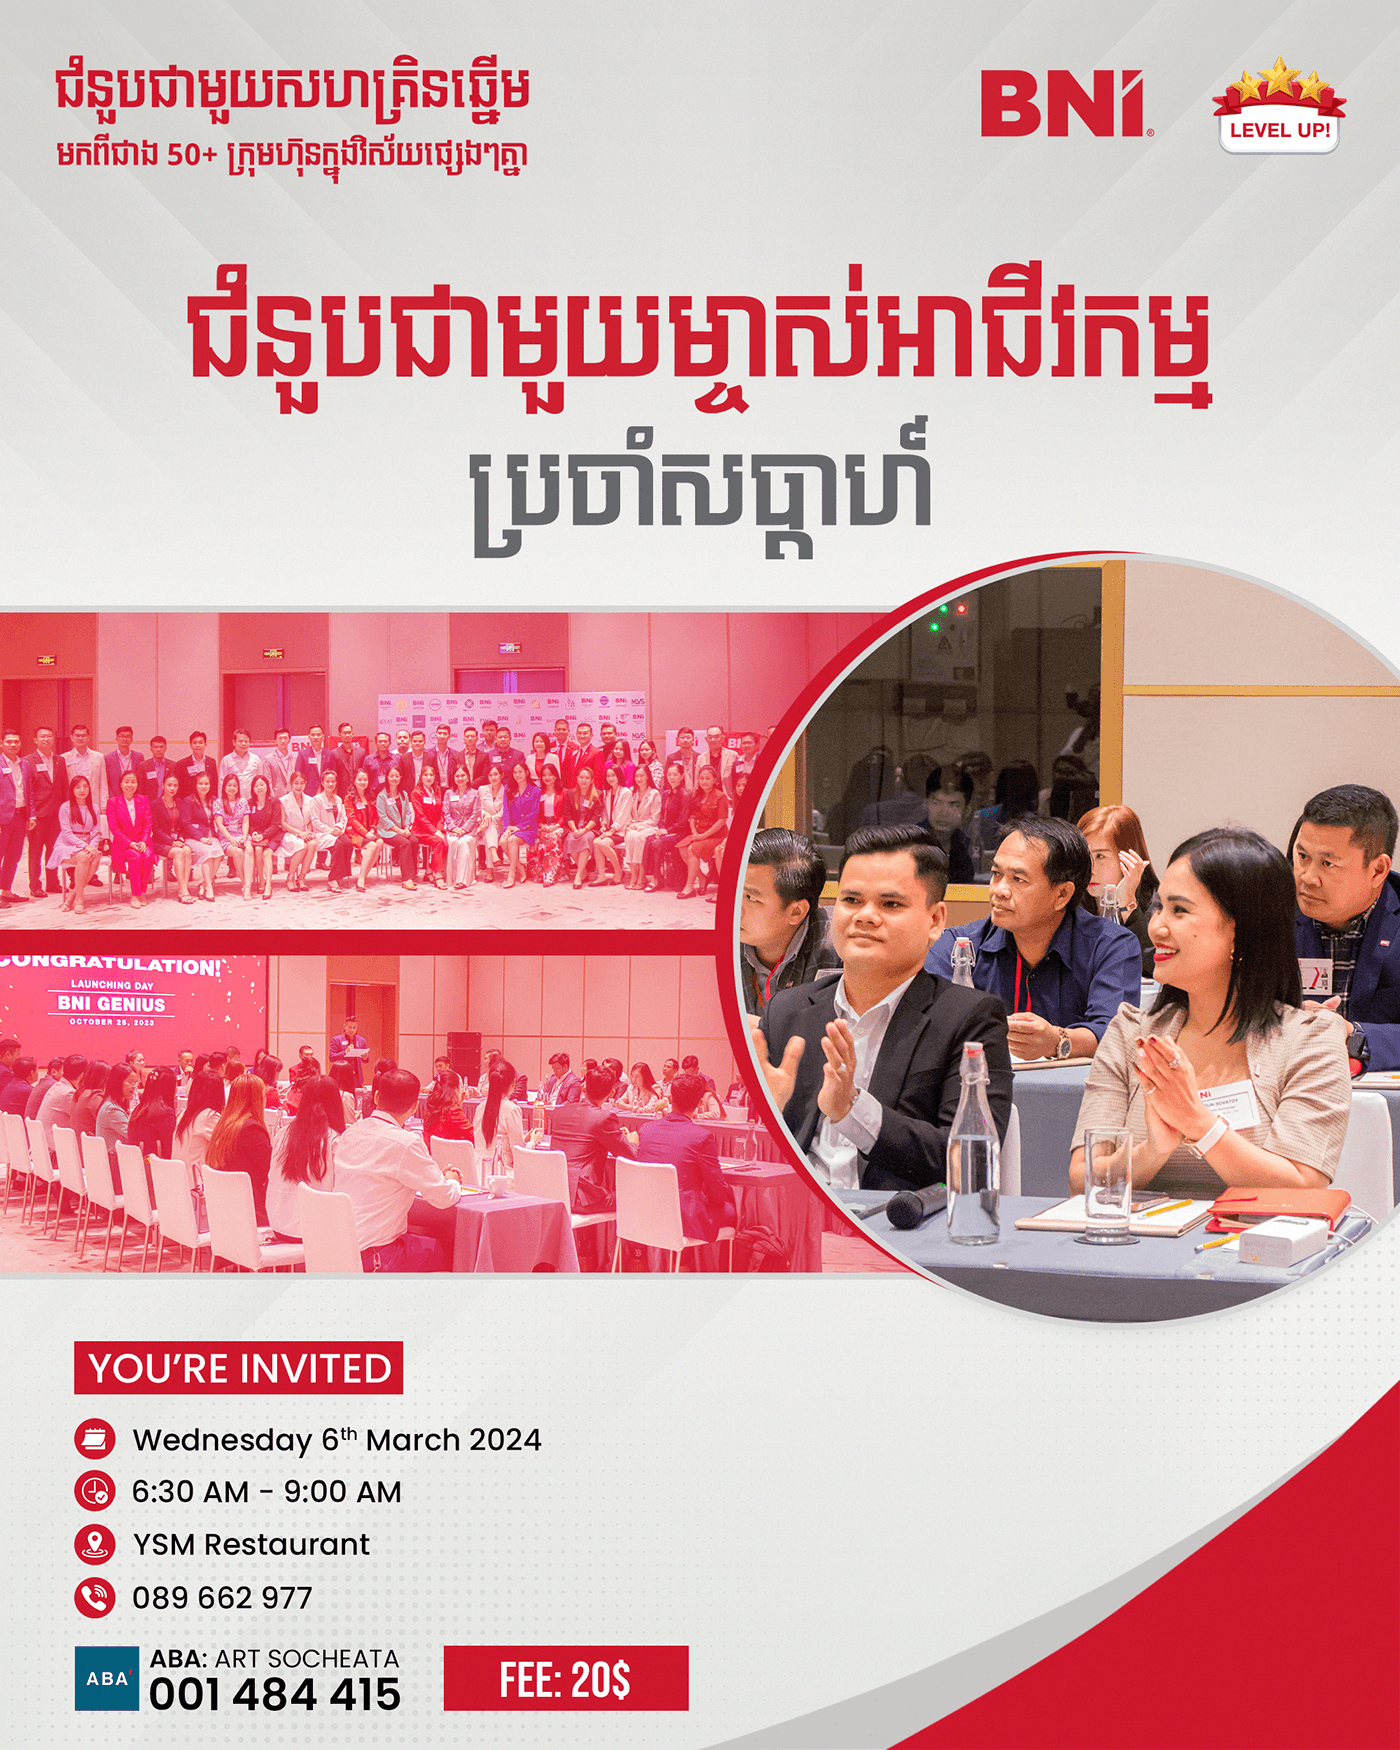 khmer poster Social media post Advertising  business poster BNI business Event party flyer Khmer